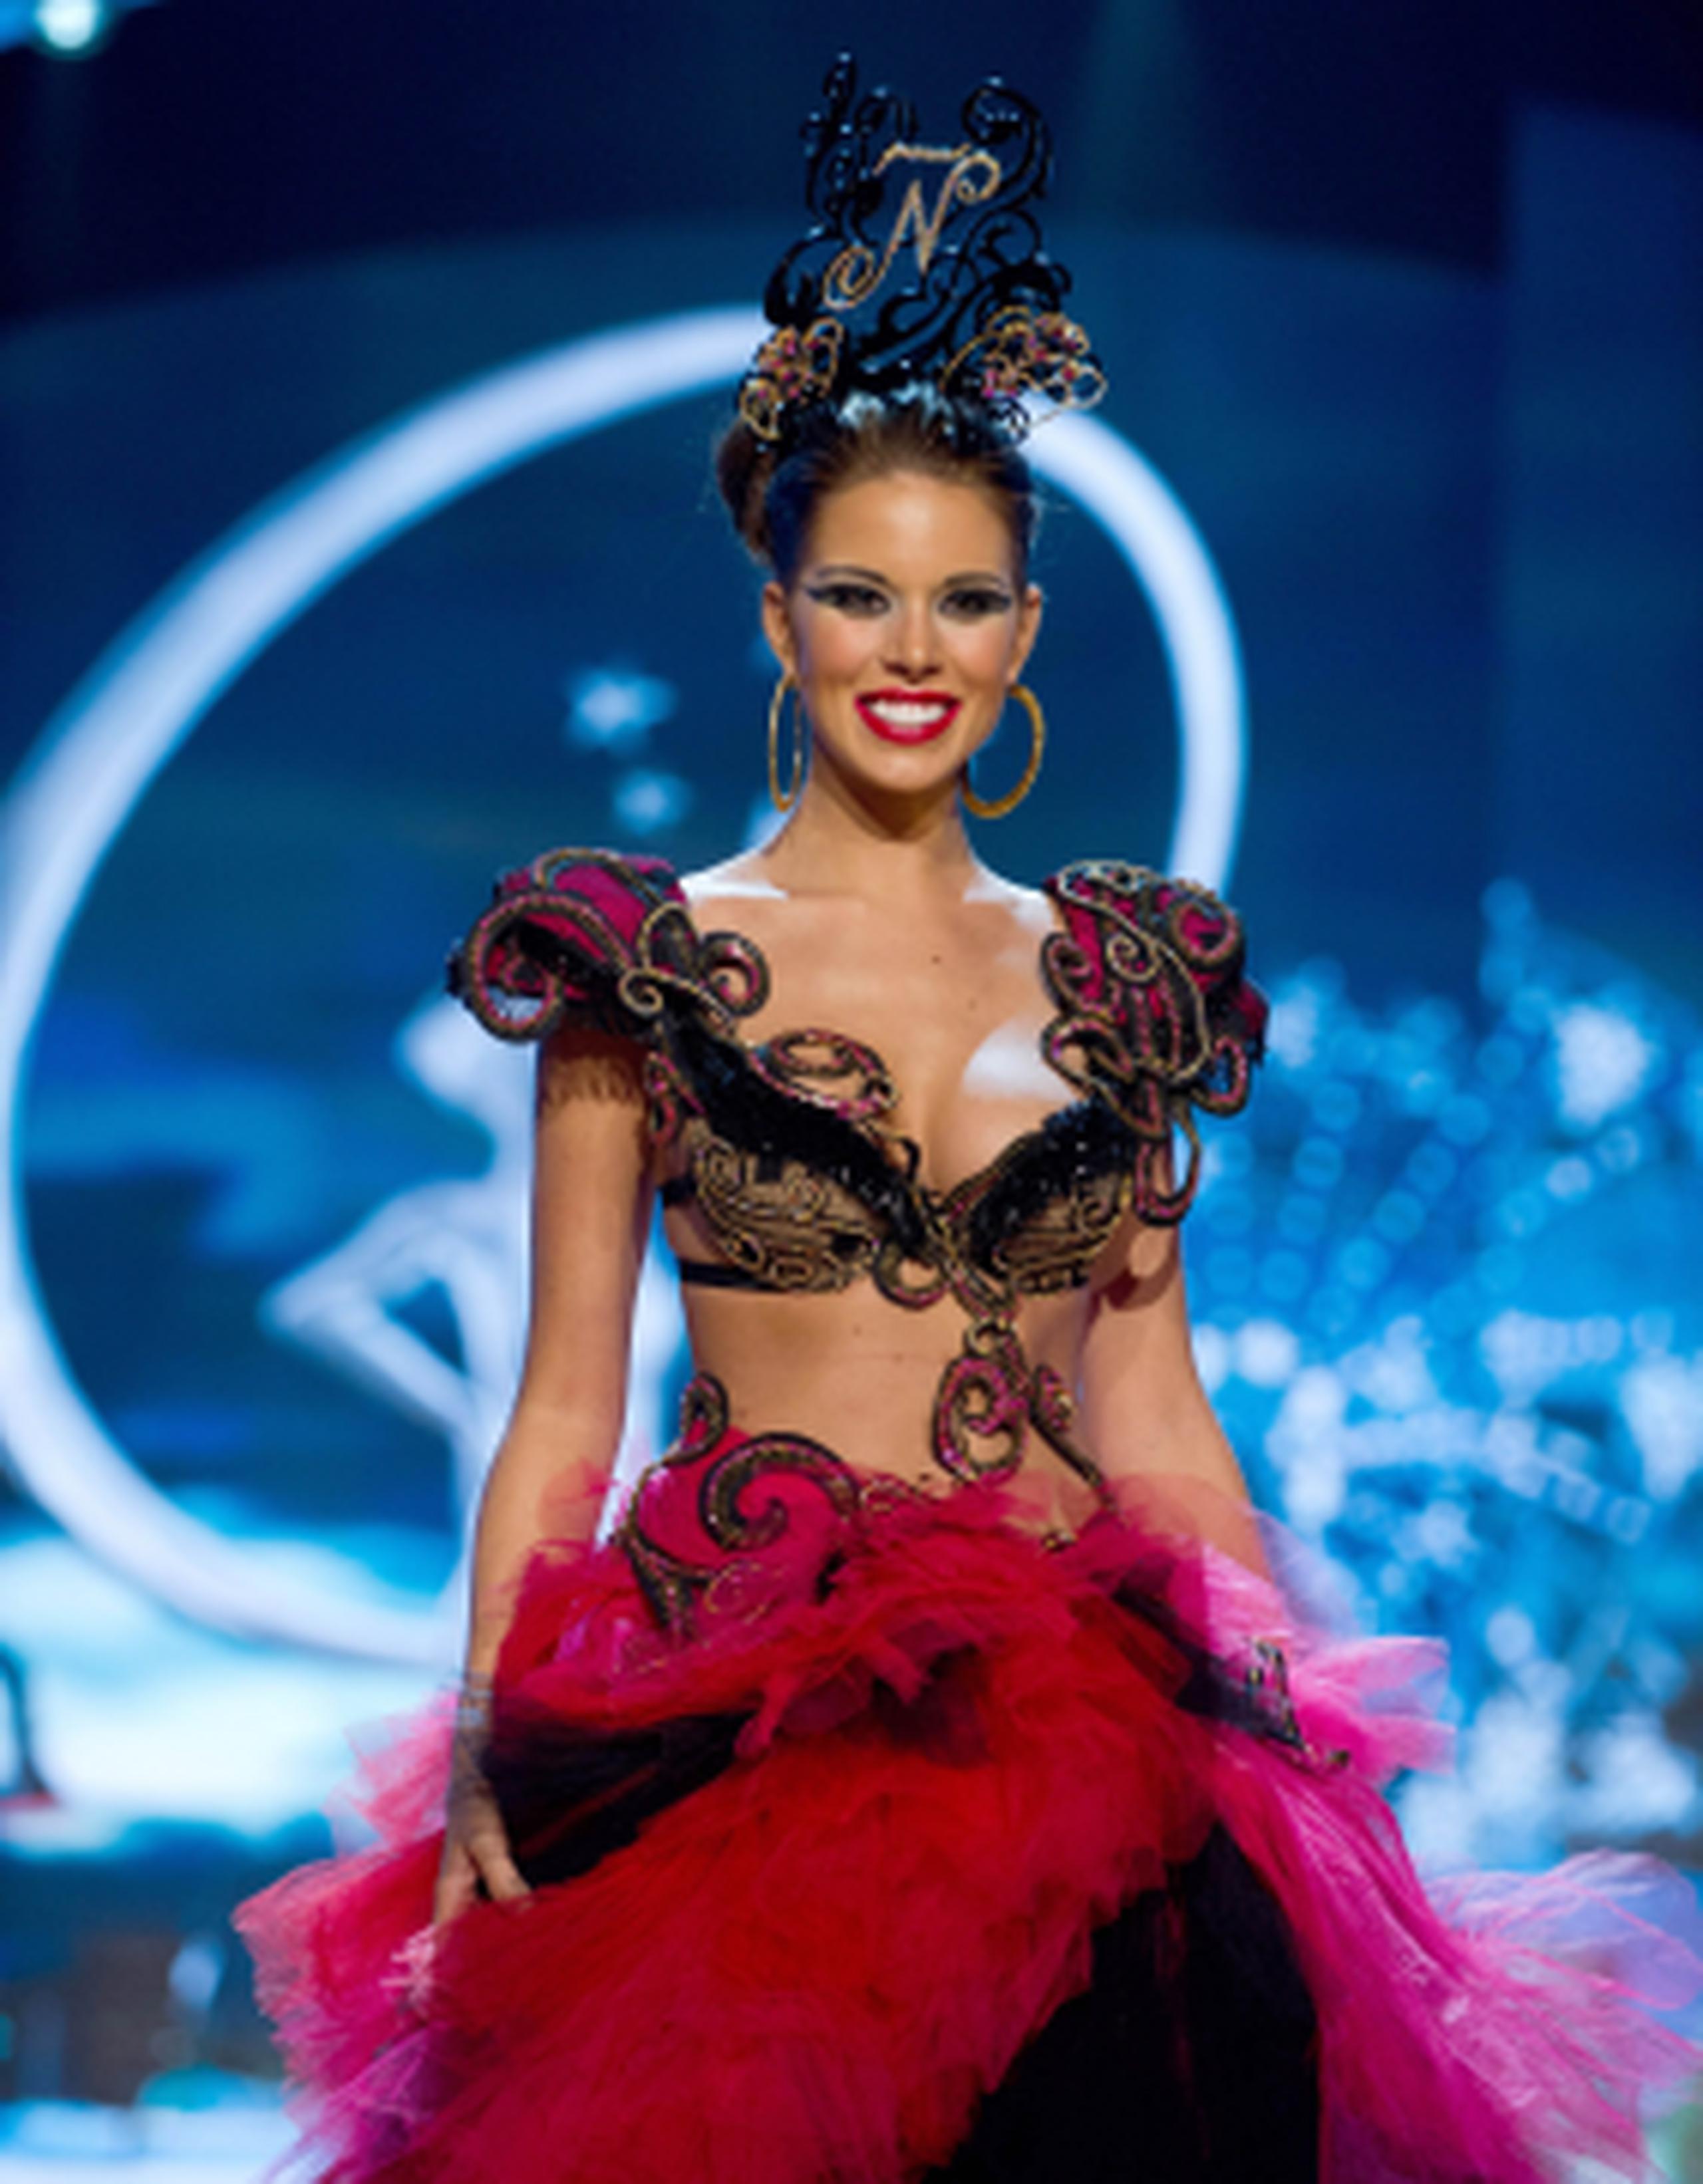 Señaló que gracias al esfuerzo de sus padres es que se encuentra en Las Vegas compitiendo por la corona de Miss Universe, cuya final se efectuará el 19 de diciembre en el teatro del hotel Planet Hollywood. (AFP)